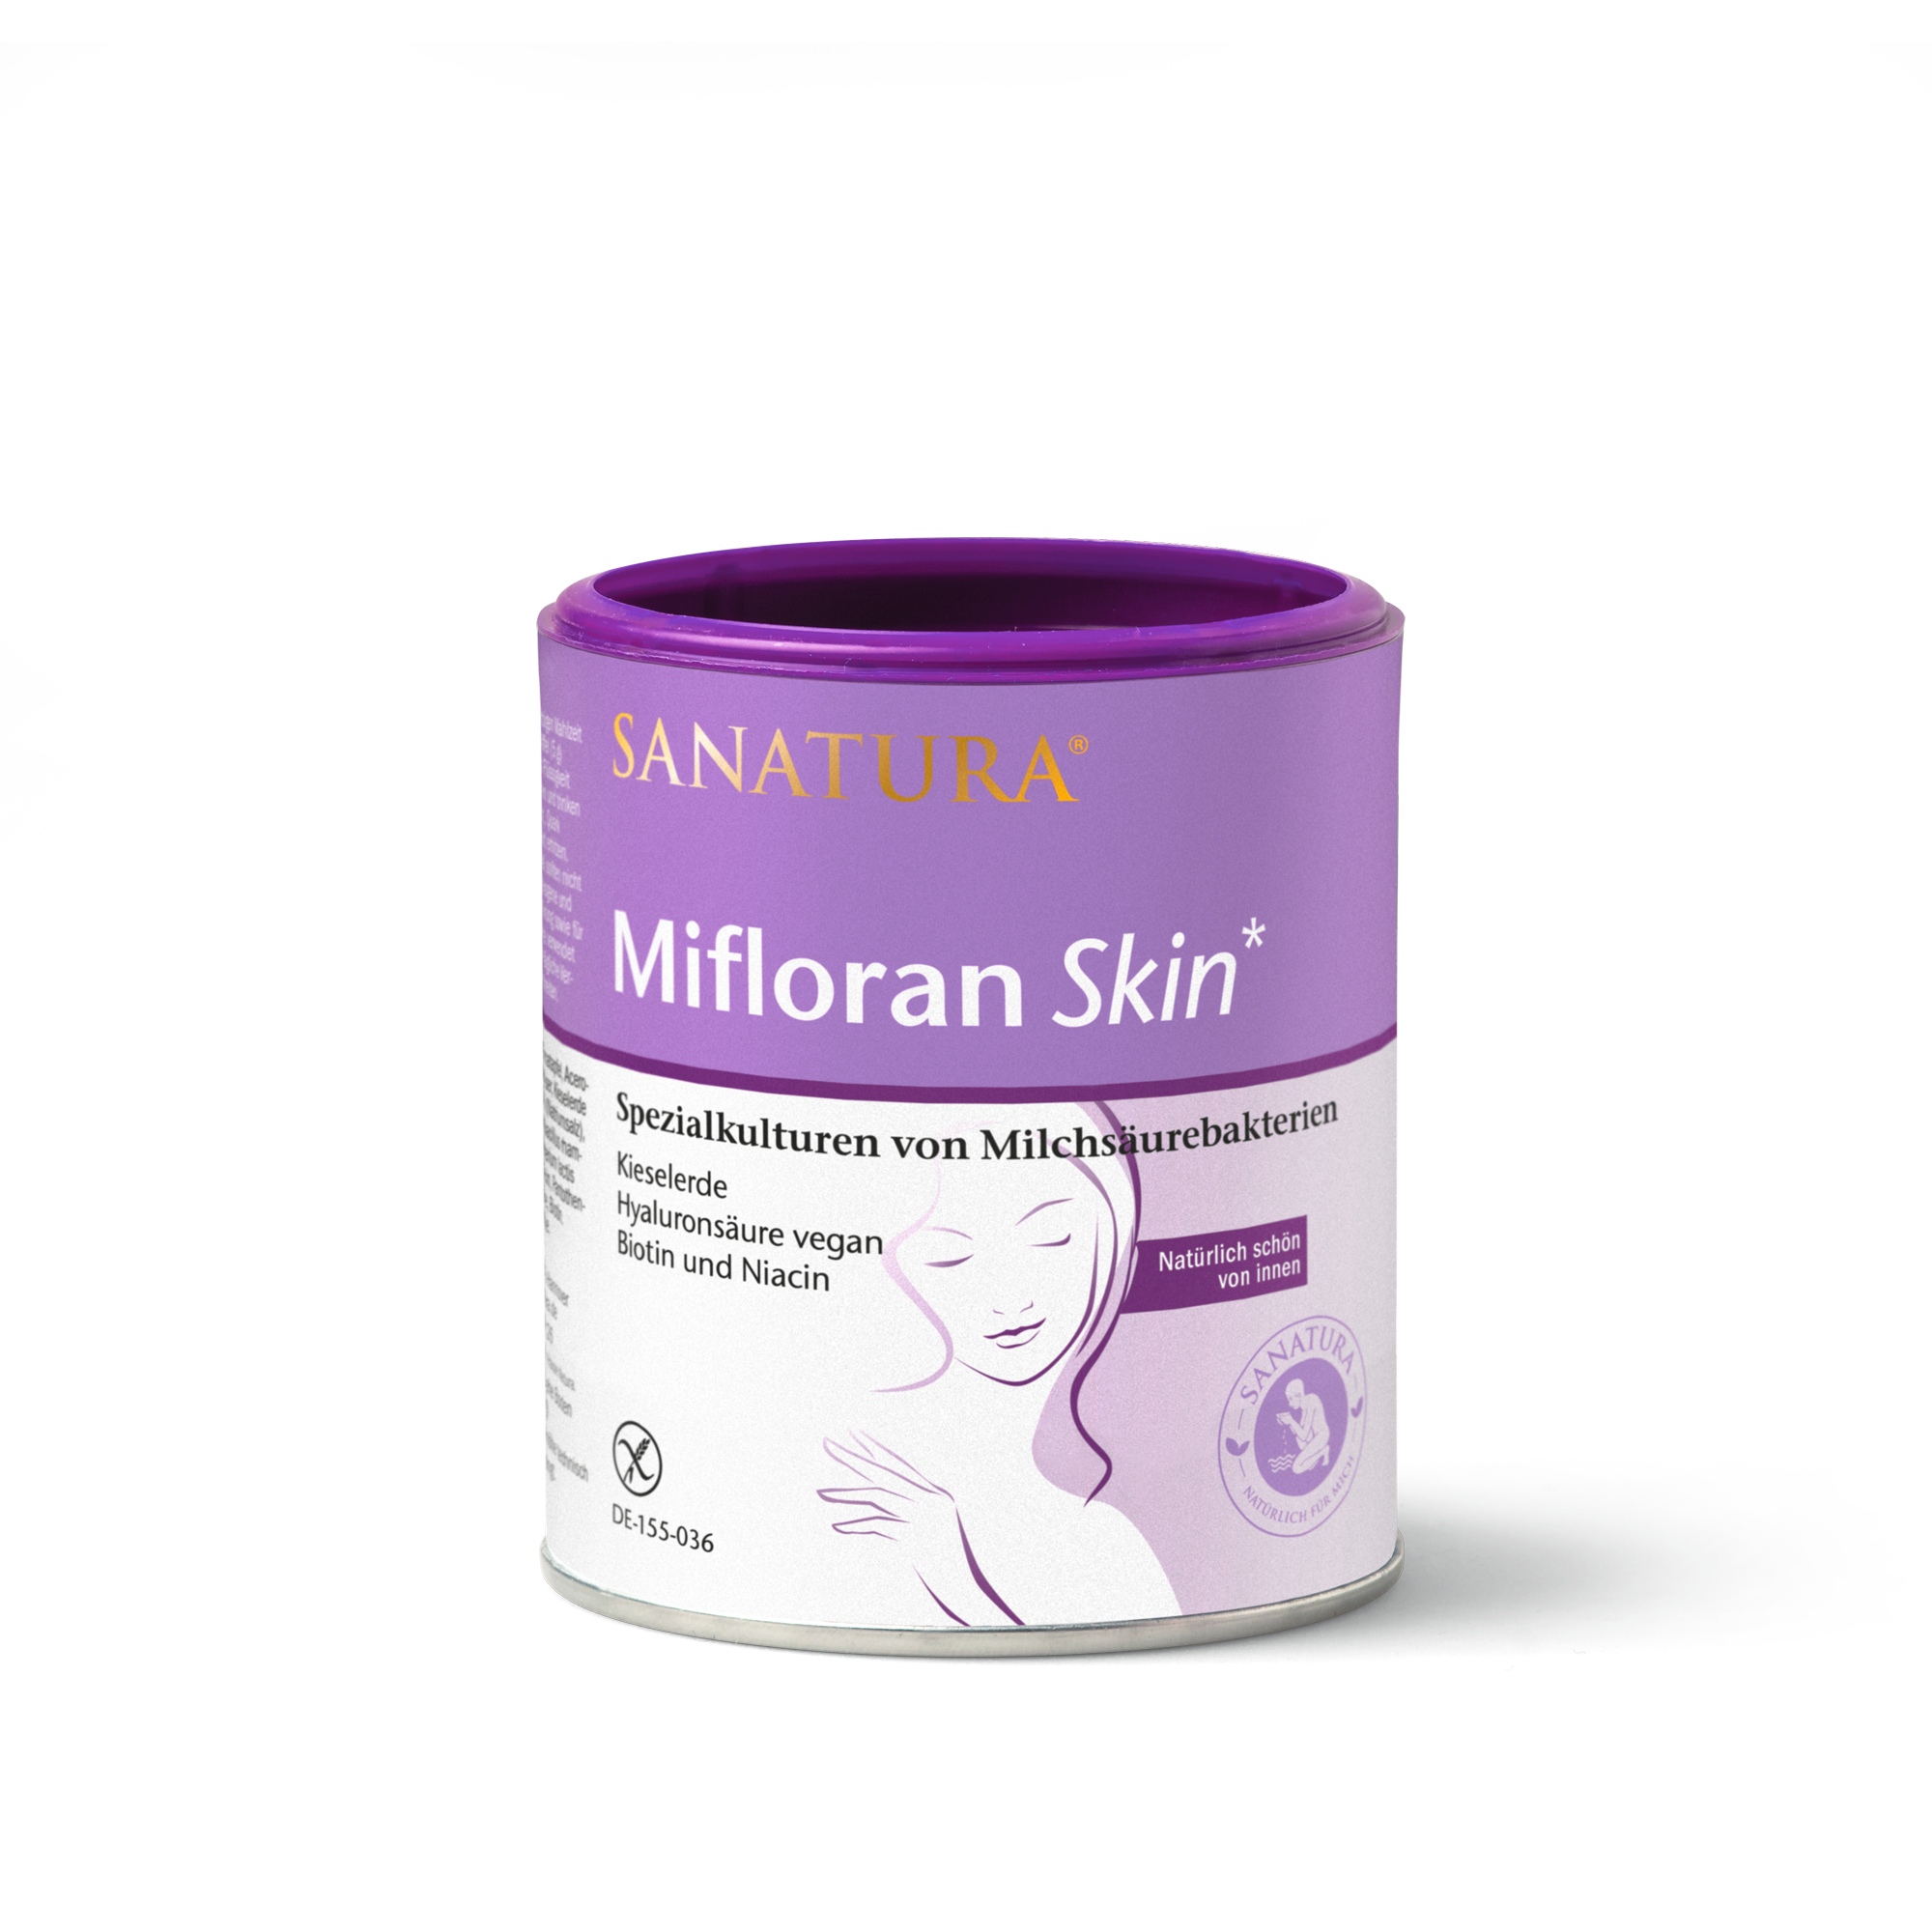 Sanatura Mifloran Skin | 125g | Förderung gesunder Haut mit Probiotika & Veganer Hyaluronsäure